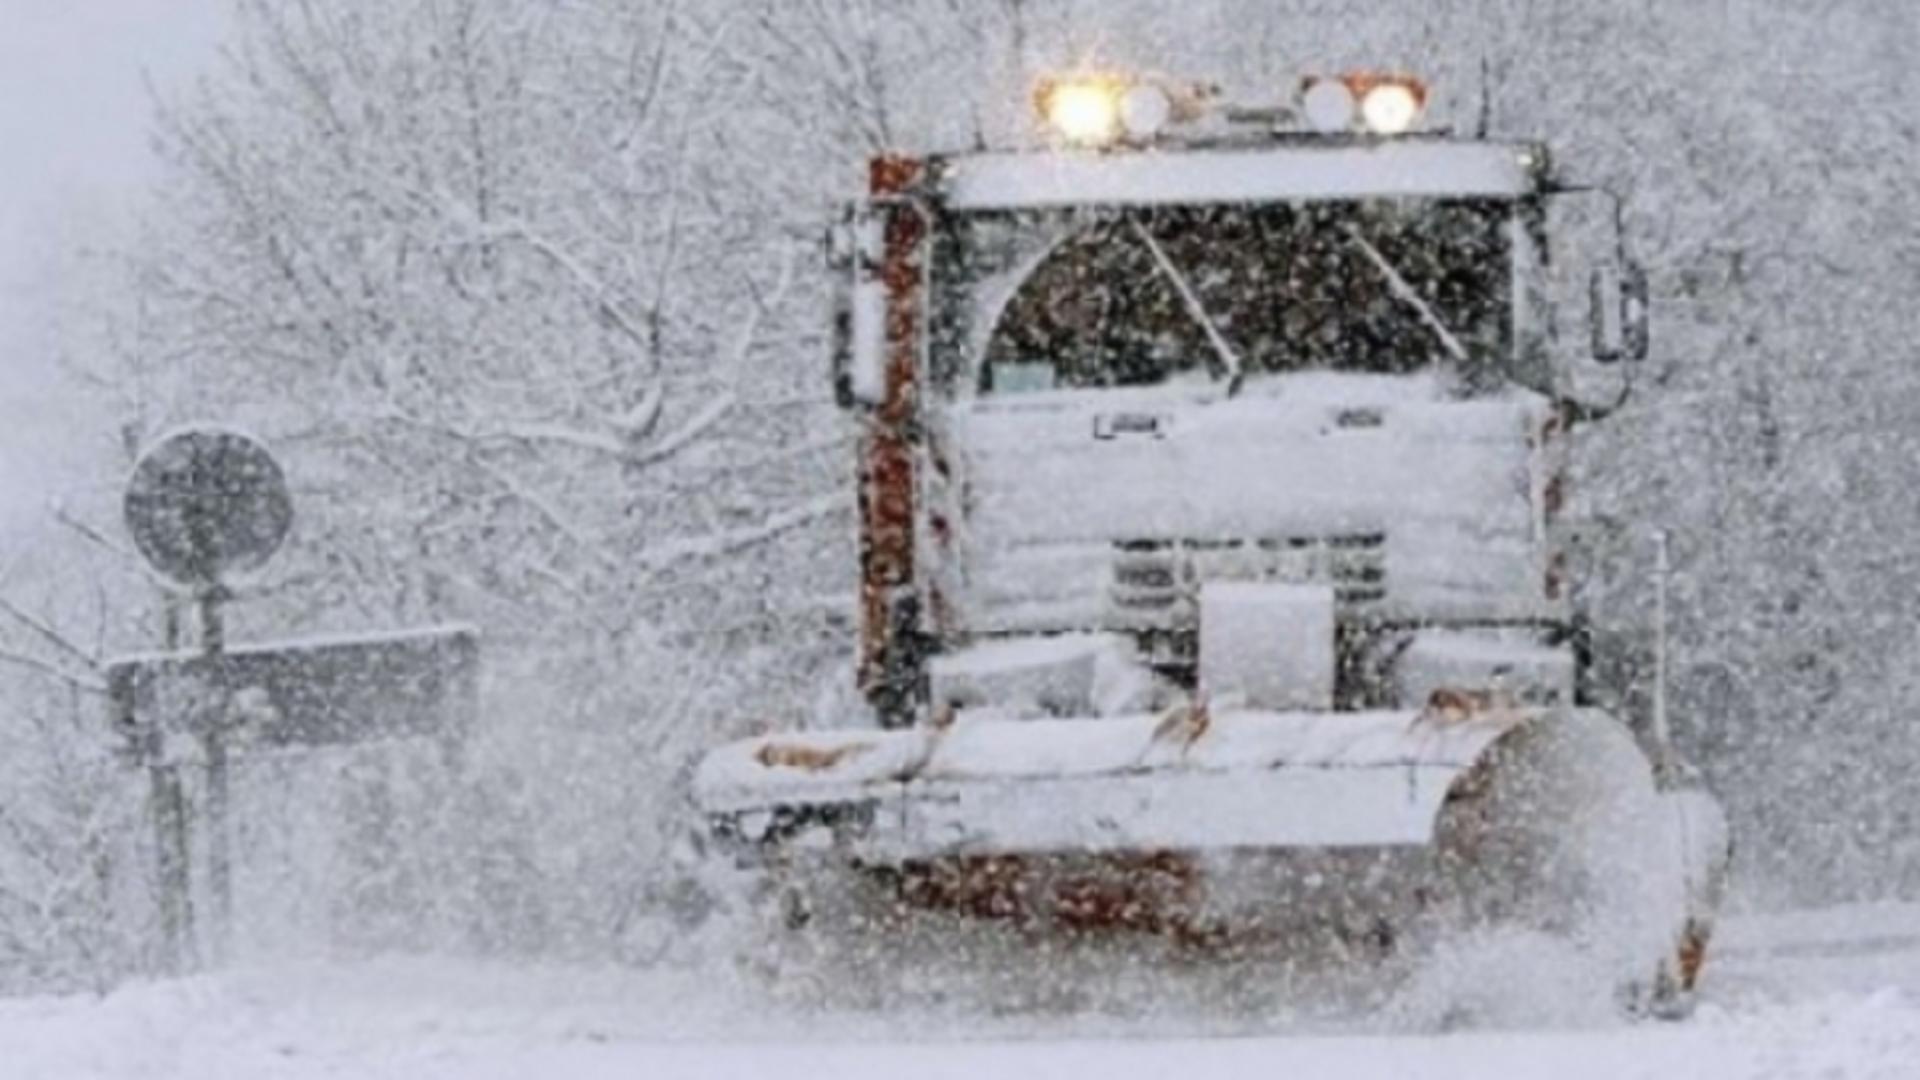 Ciclonul polar lovește România. Meteorolog ANM: “Stratul de zăpadă ar putea crește considerabil”